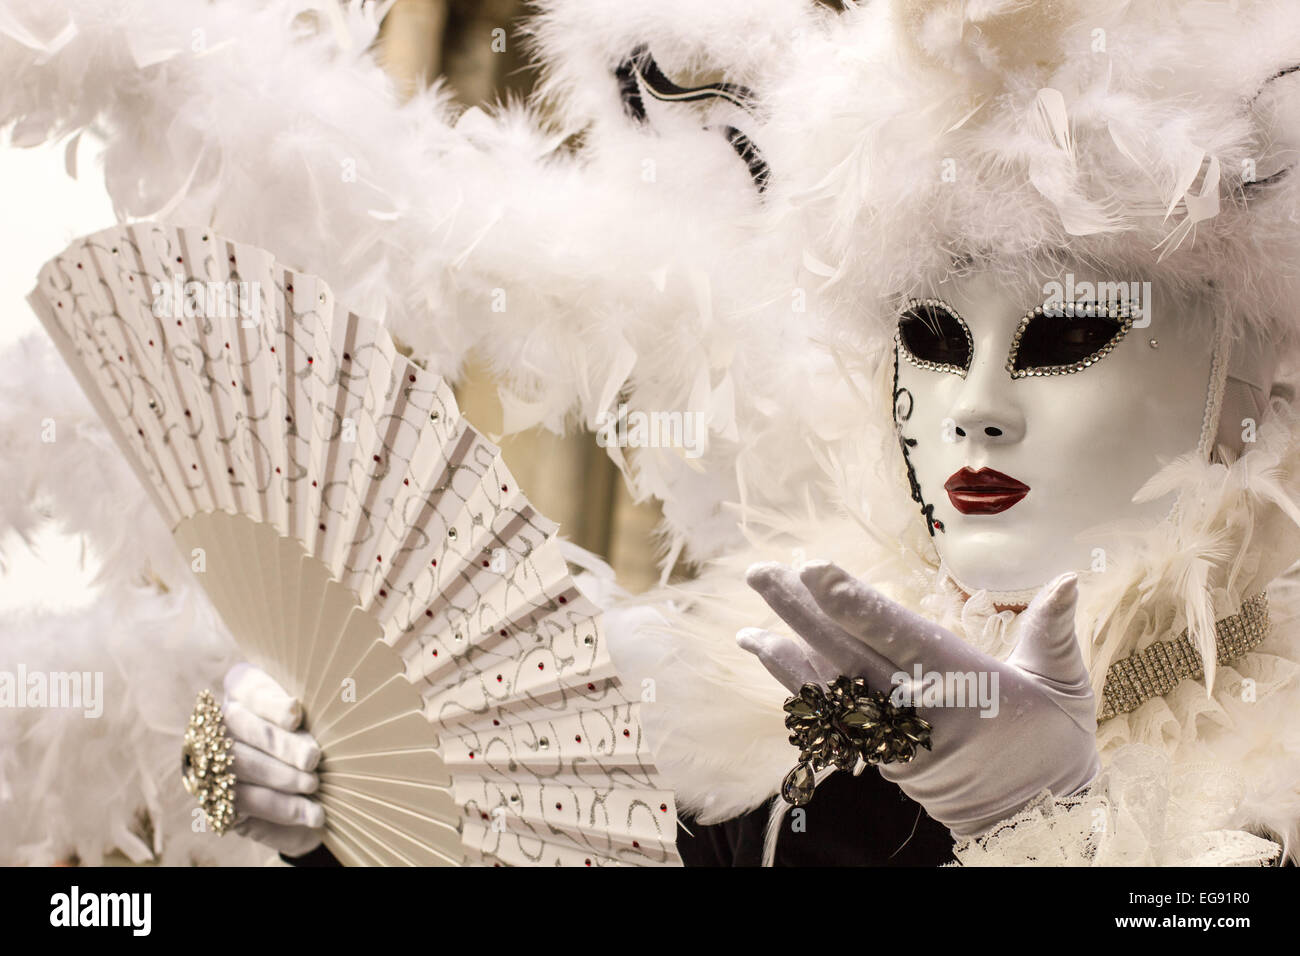 Venice Carnival Masquerade Stock Photo